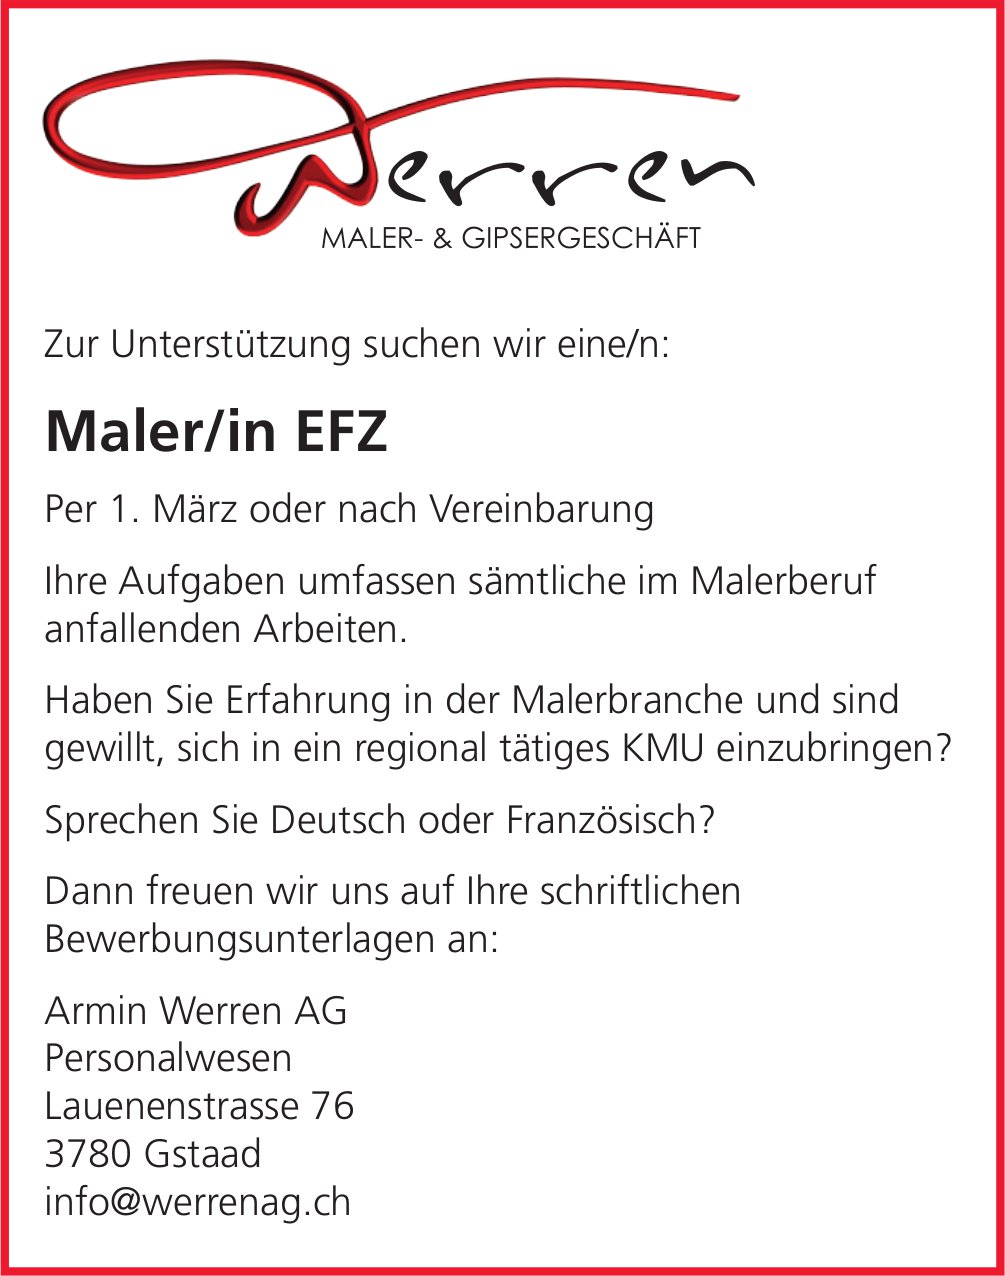 Maler/in EFZ, Armin Werren AG, Gstaad, gesucht